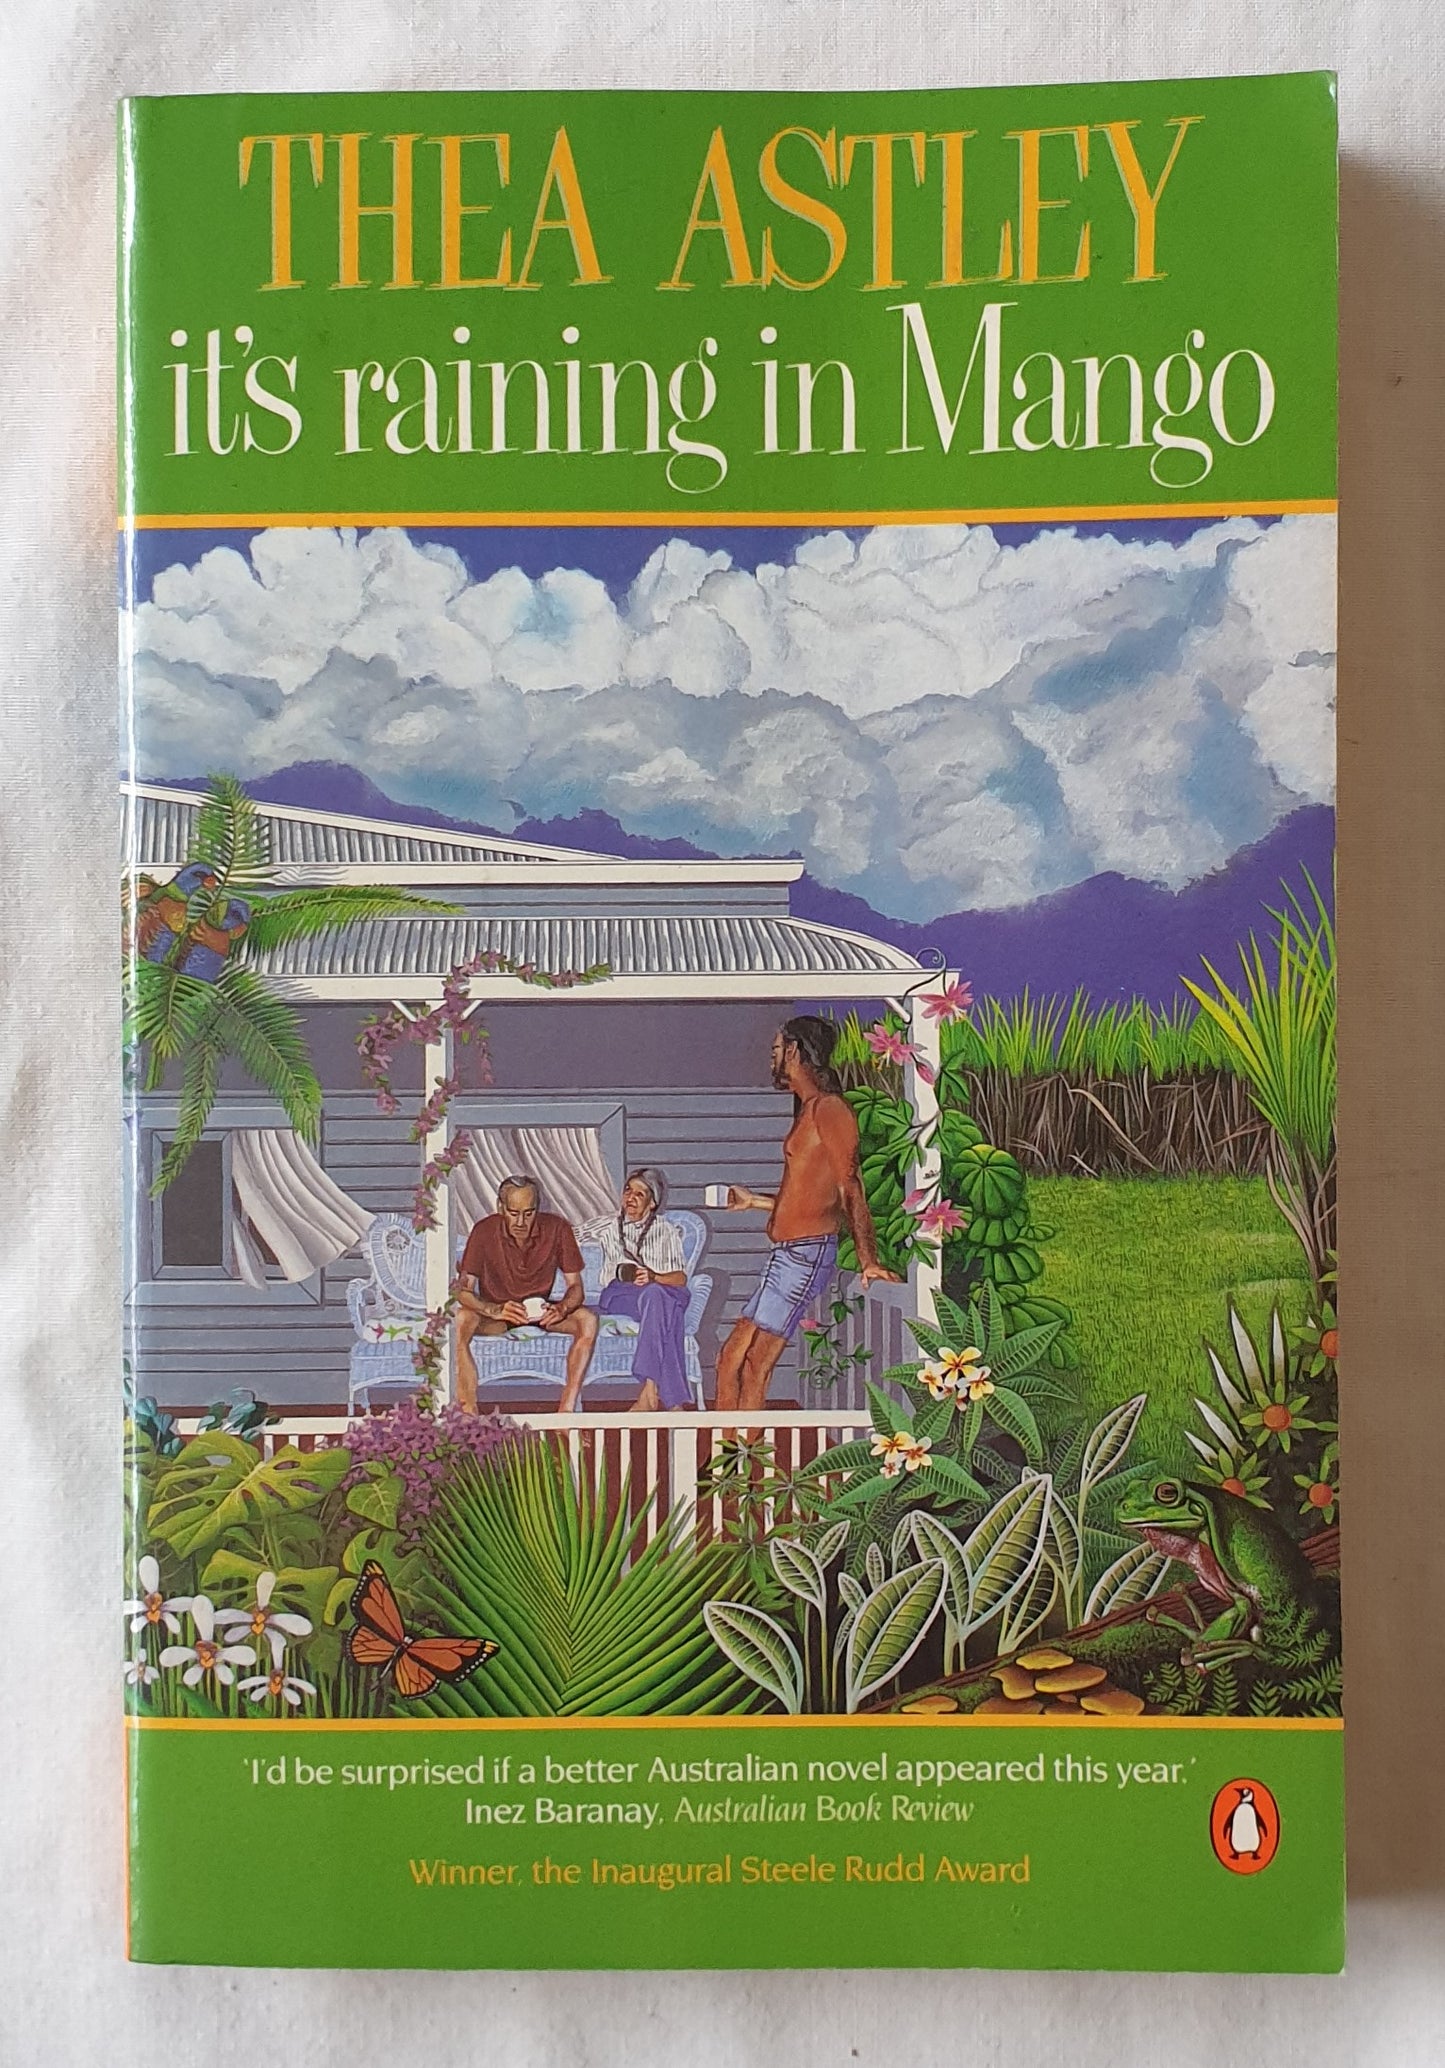 It’s Raining in Mango by Thea Astley